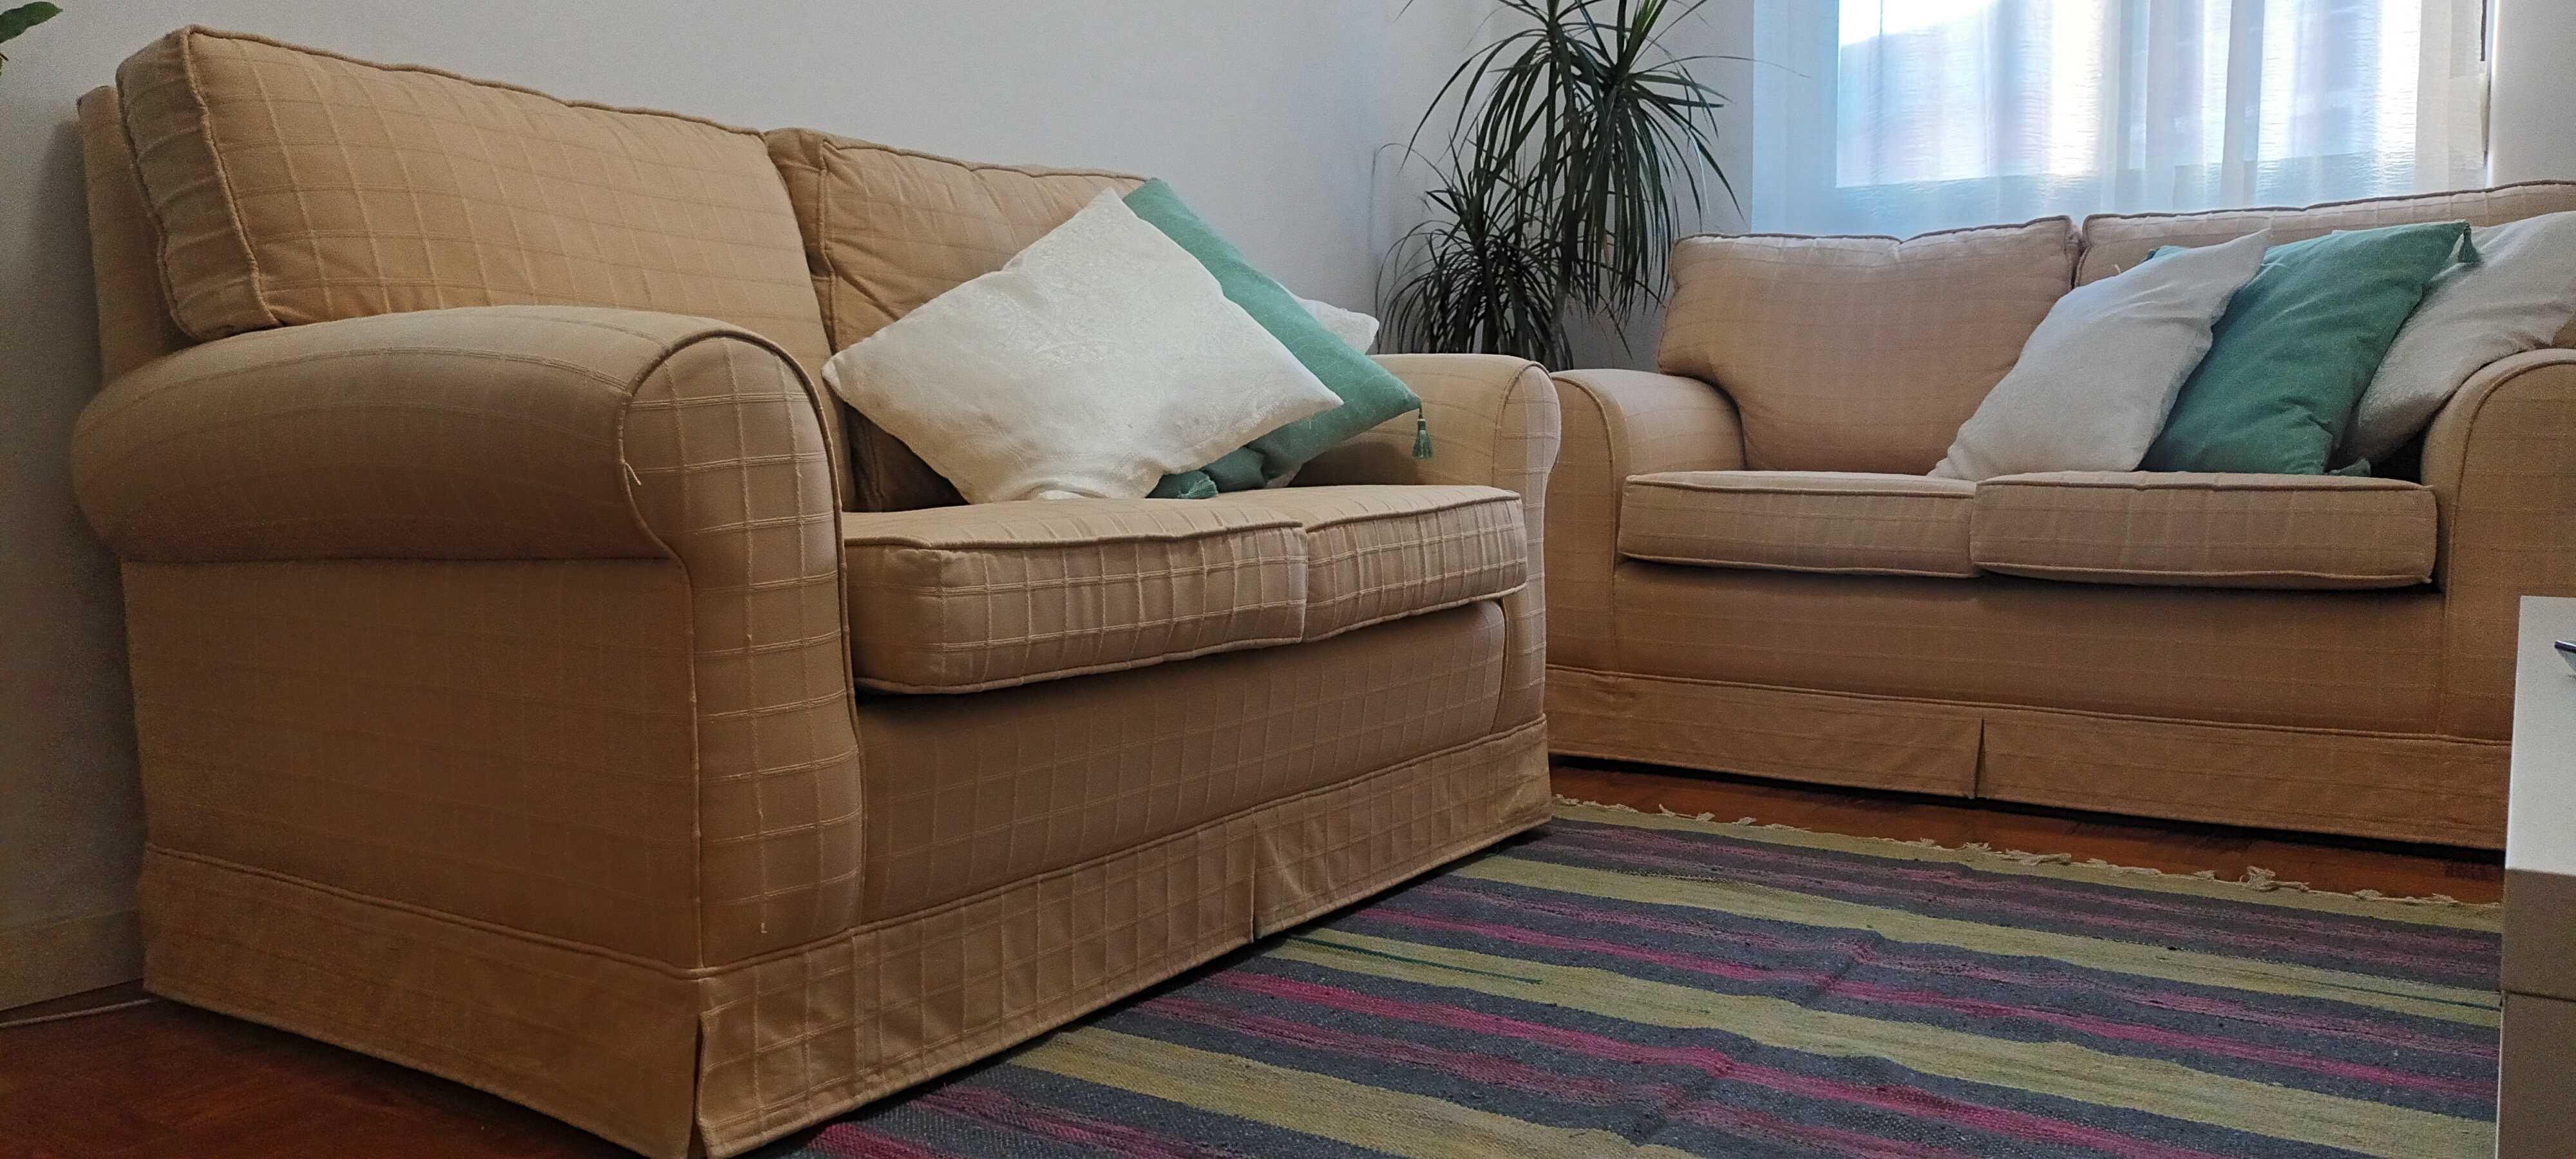 Sofá impecável e confortável quer um sofá de qualidade?  Este é ideal